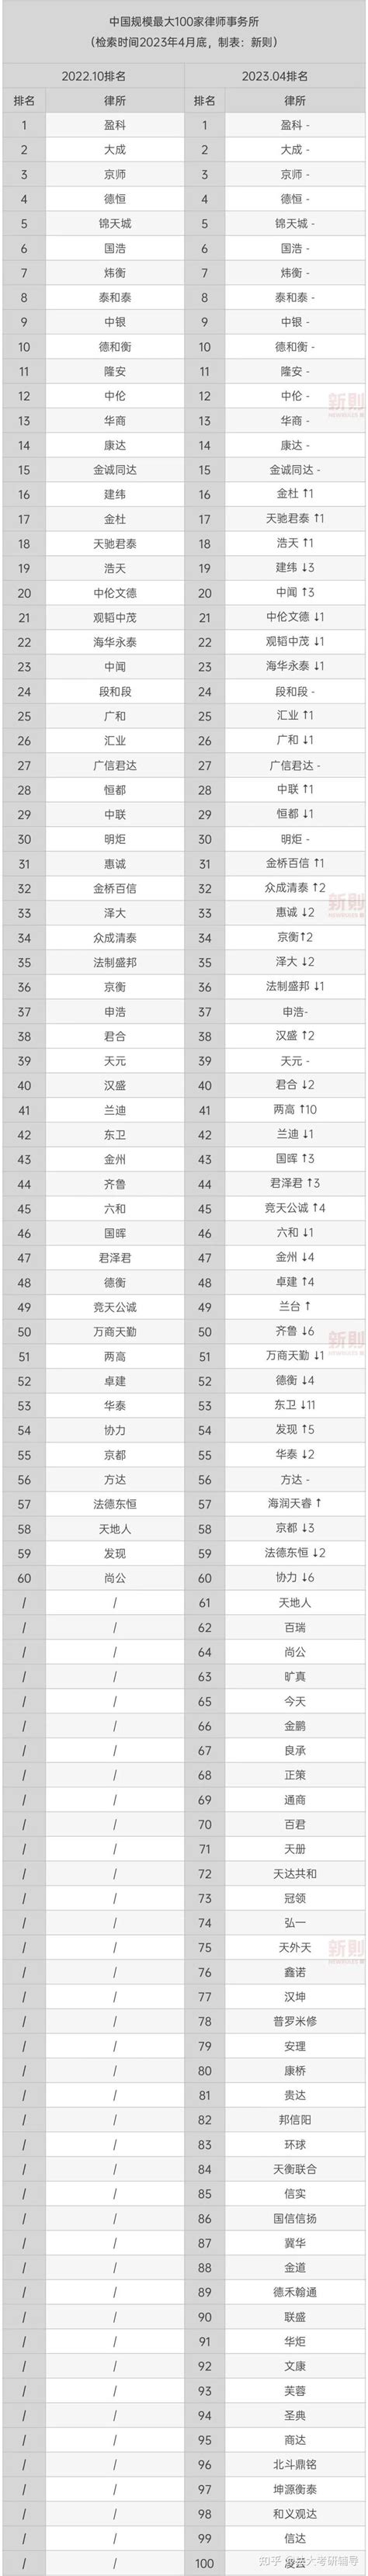 中国规模最大100家律所排名 | 2023.04最新数据 - 知乎